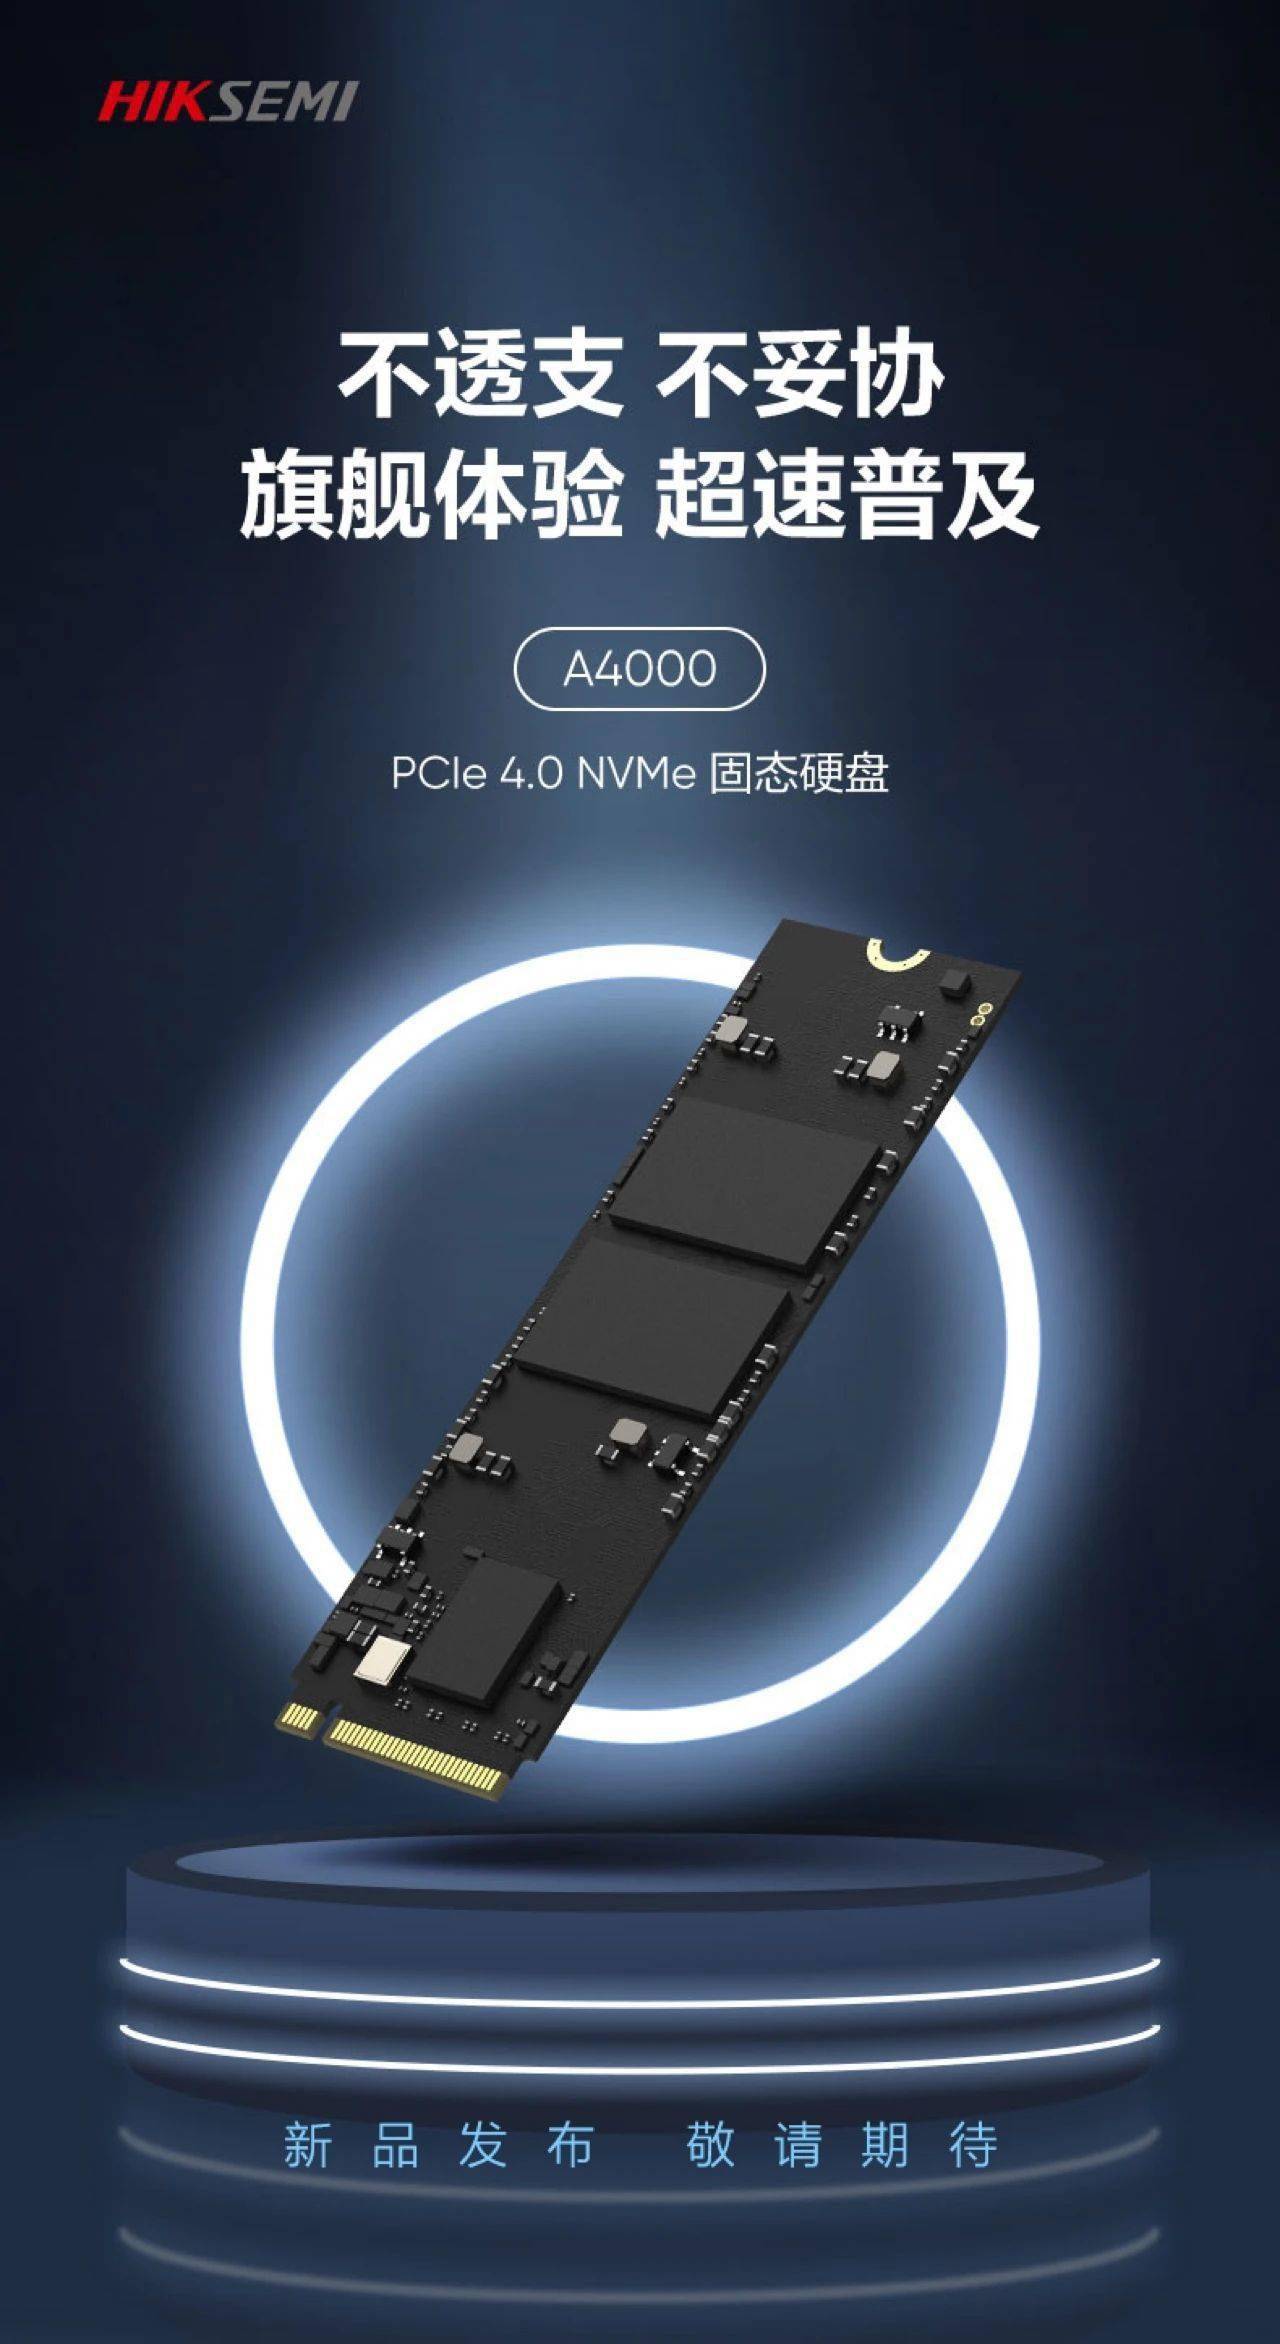 海康存储A4000 PCIe4.0 SSD即将推出 最高读速7.1GB/s